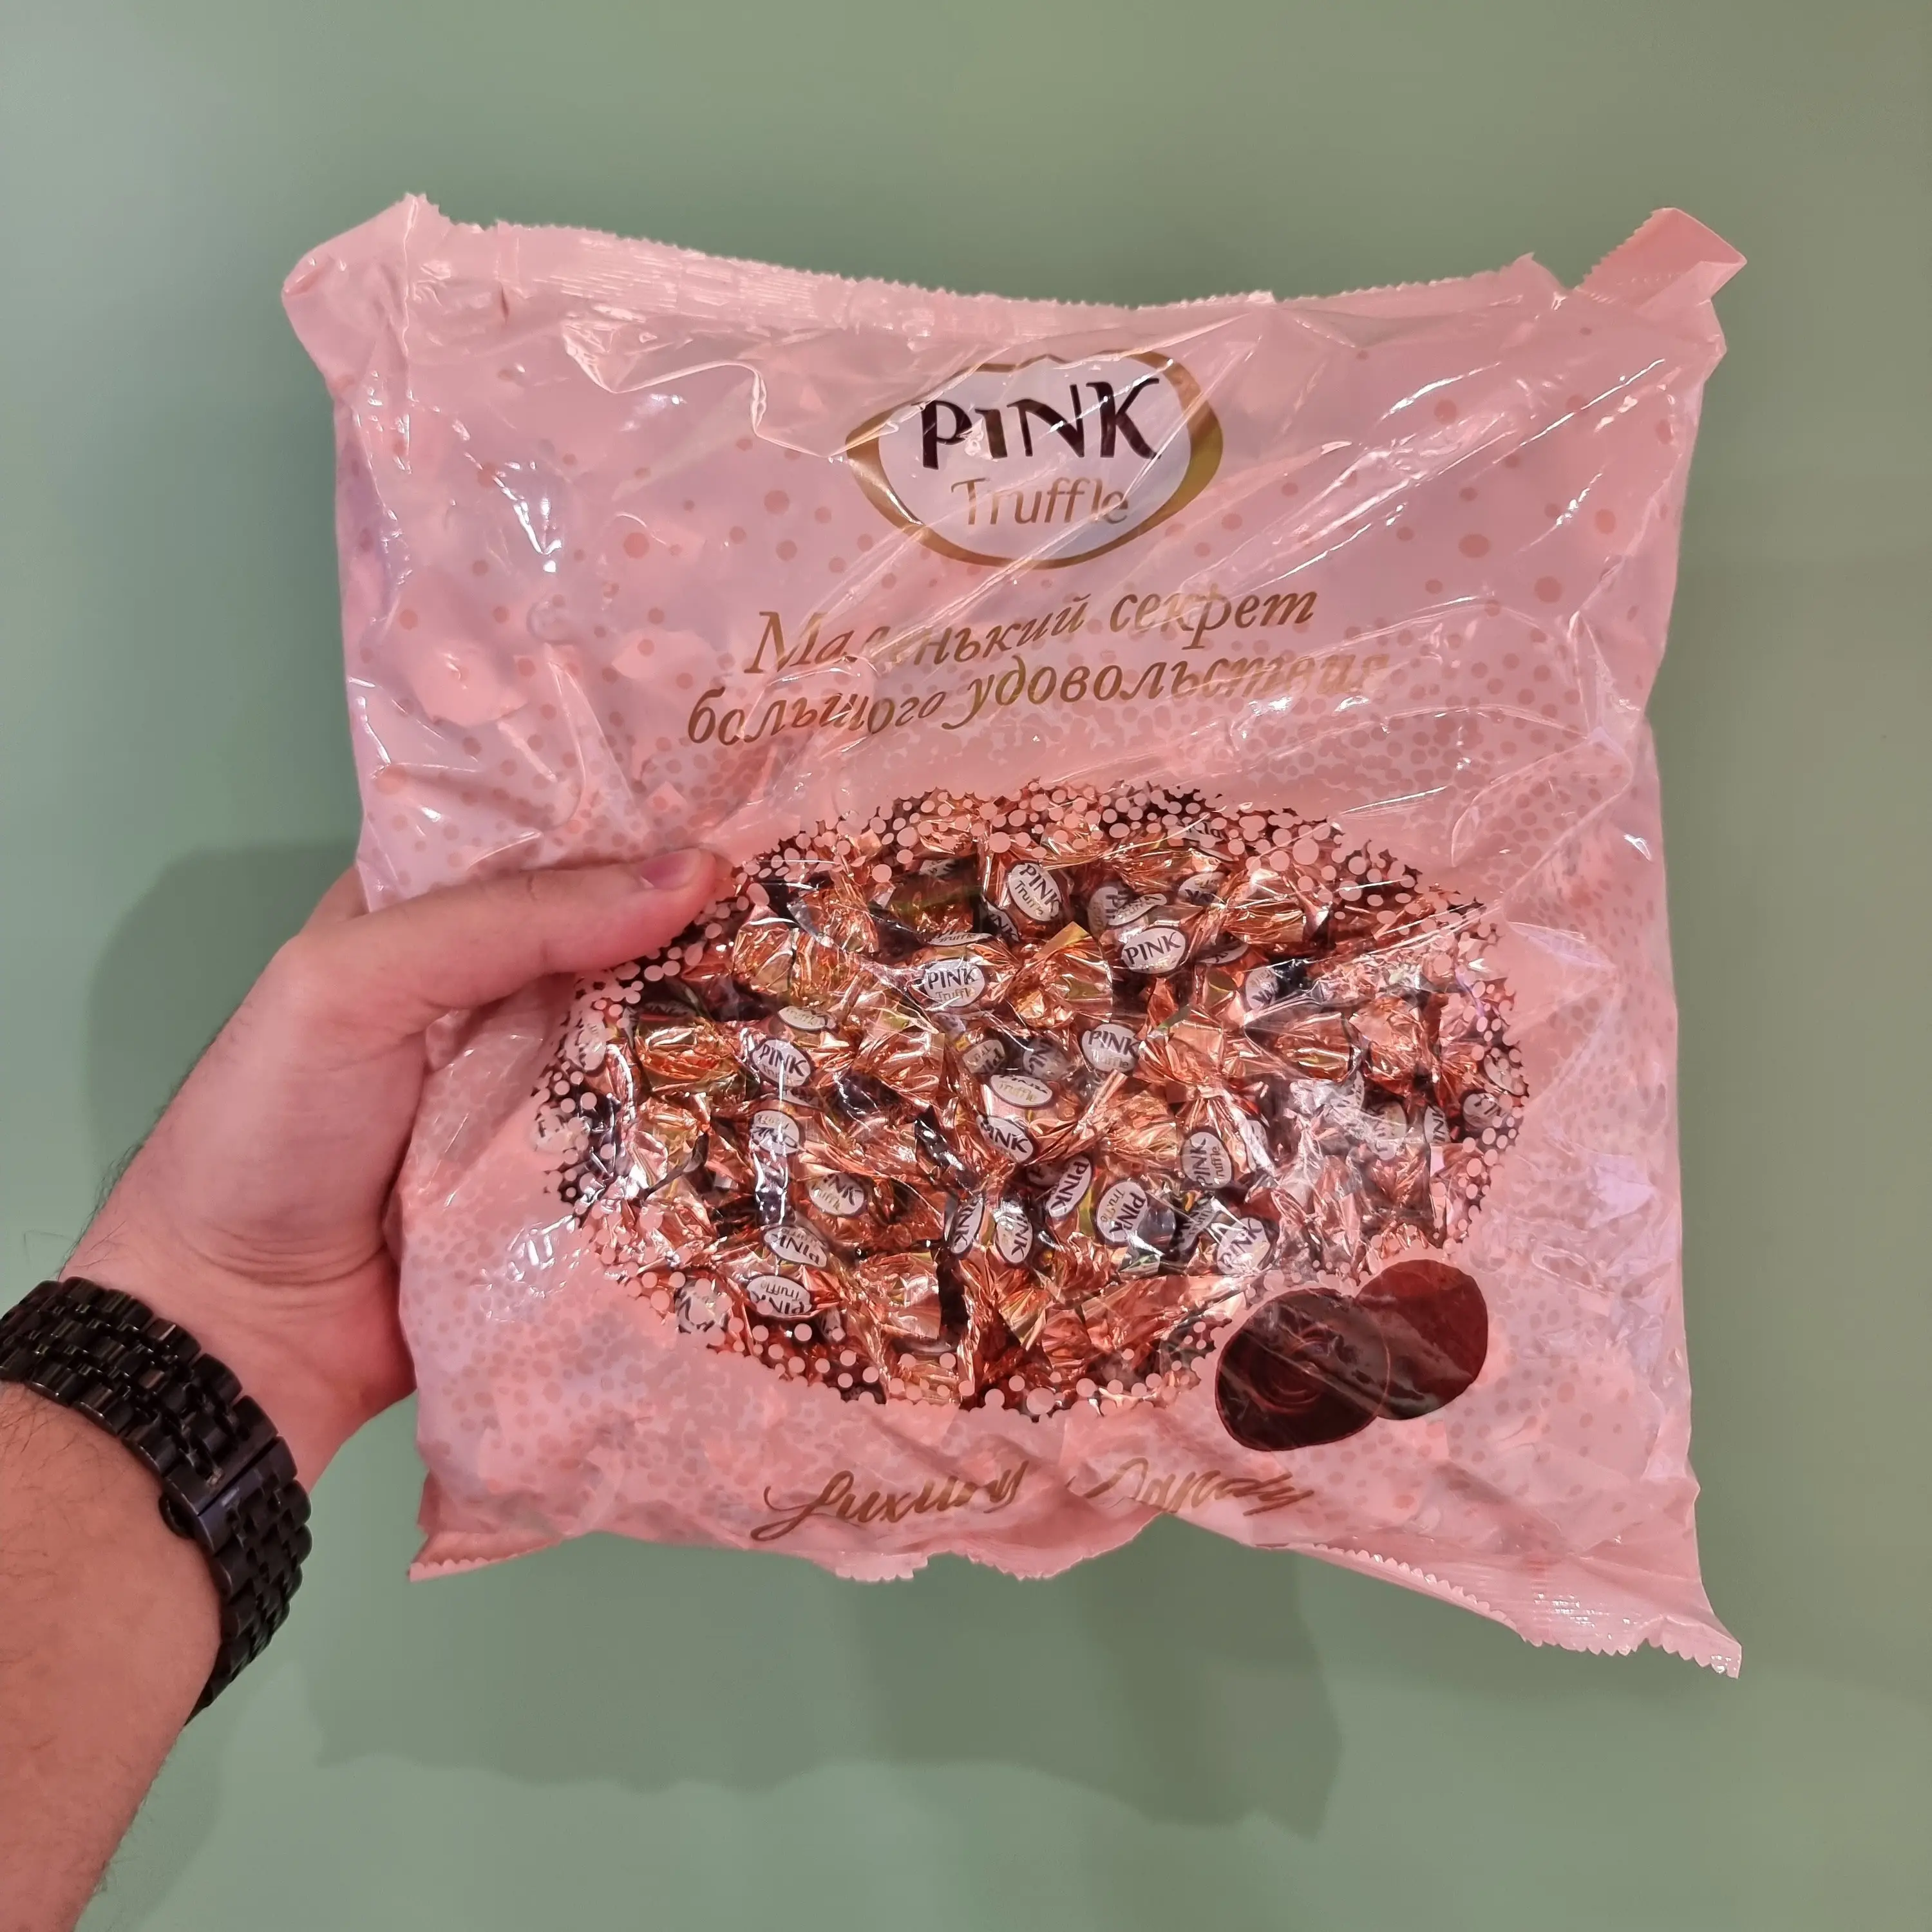 شکلات ترافل پنیک pink روس